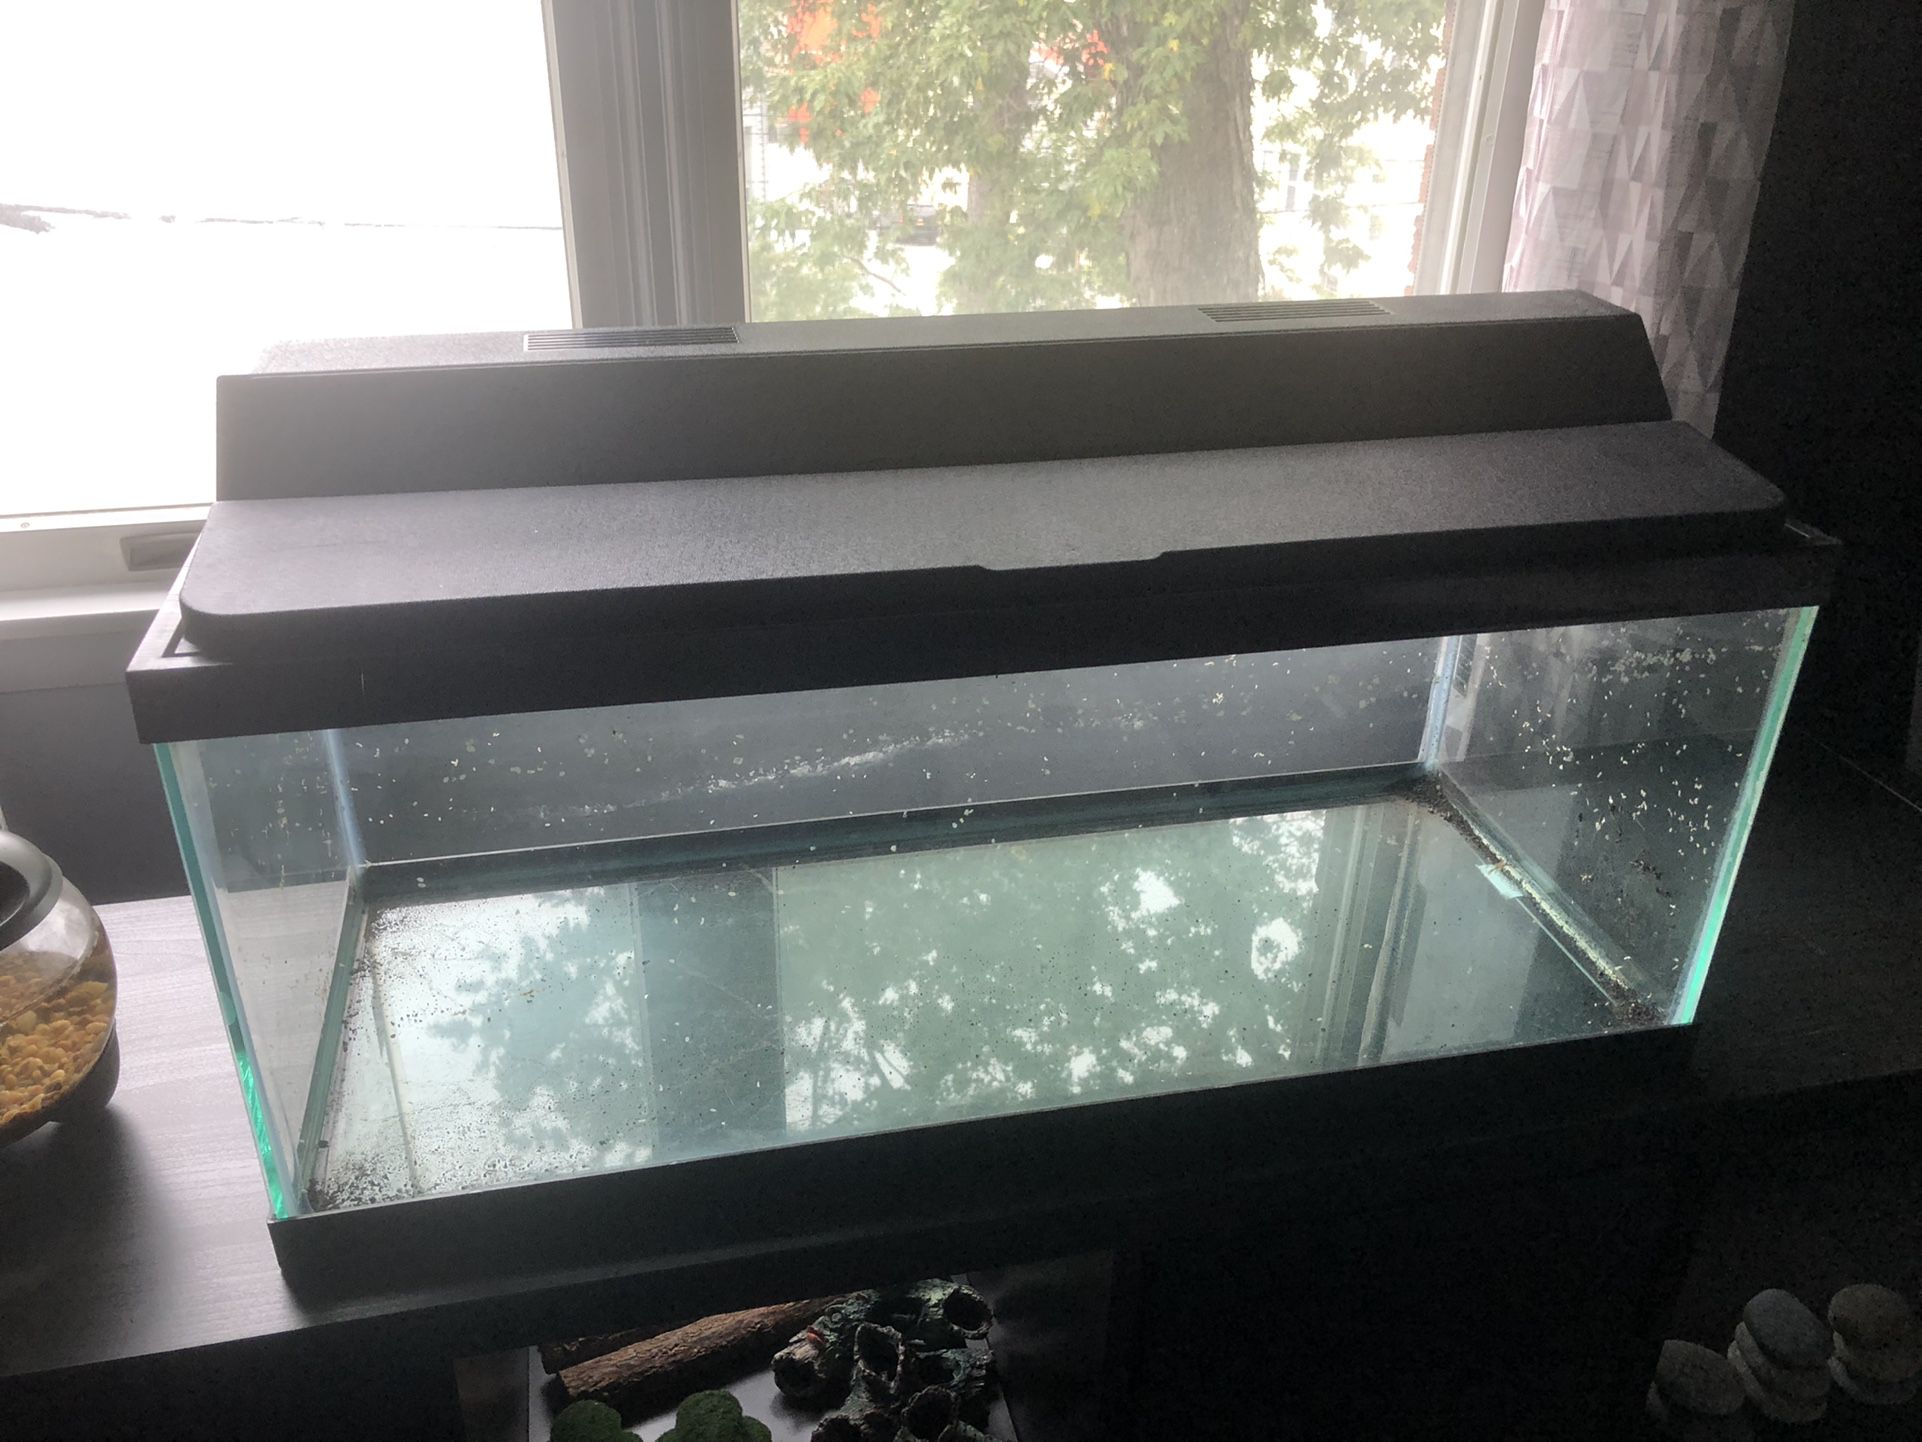 20g Long Fish Tank Aquarium w/ Full Top & Light